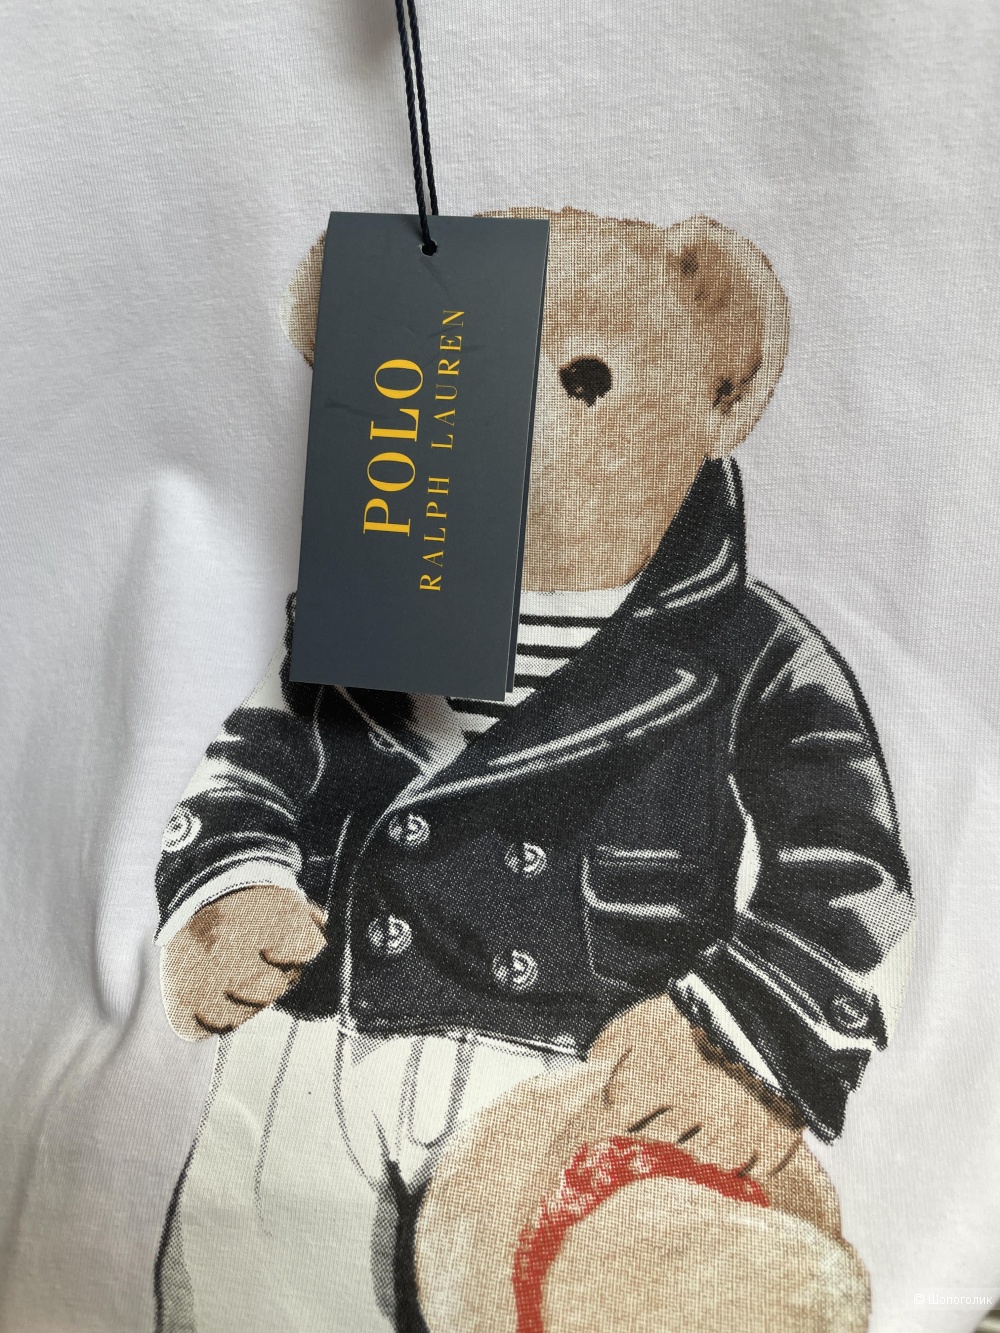 Комплект футболка Polo Ralph lauren и джинсы, 44-48